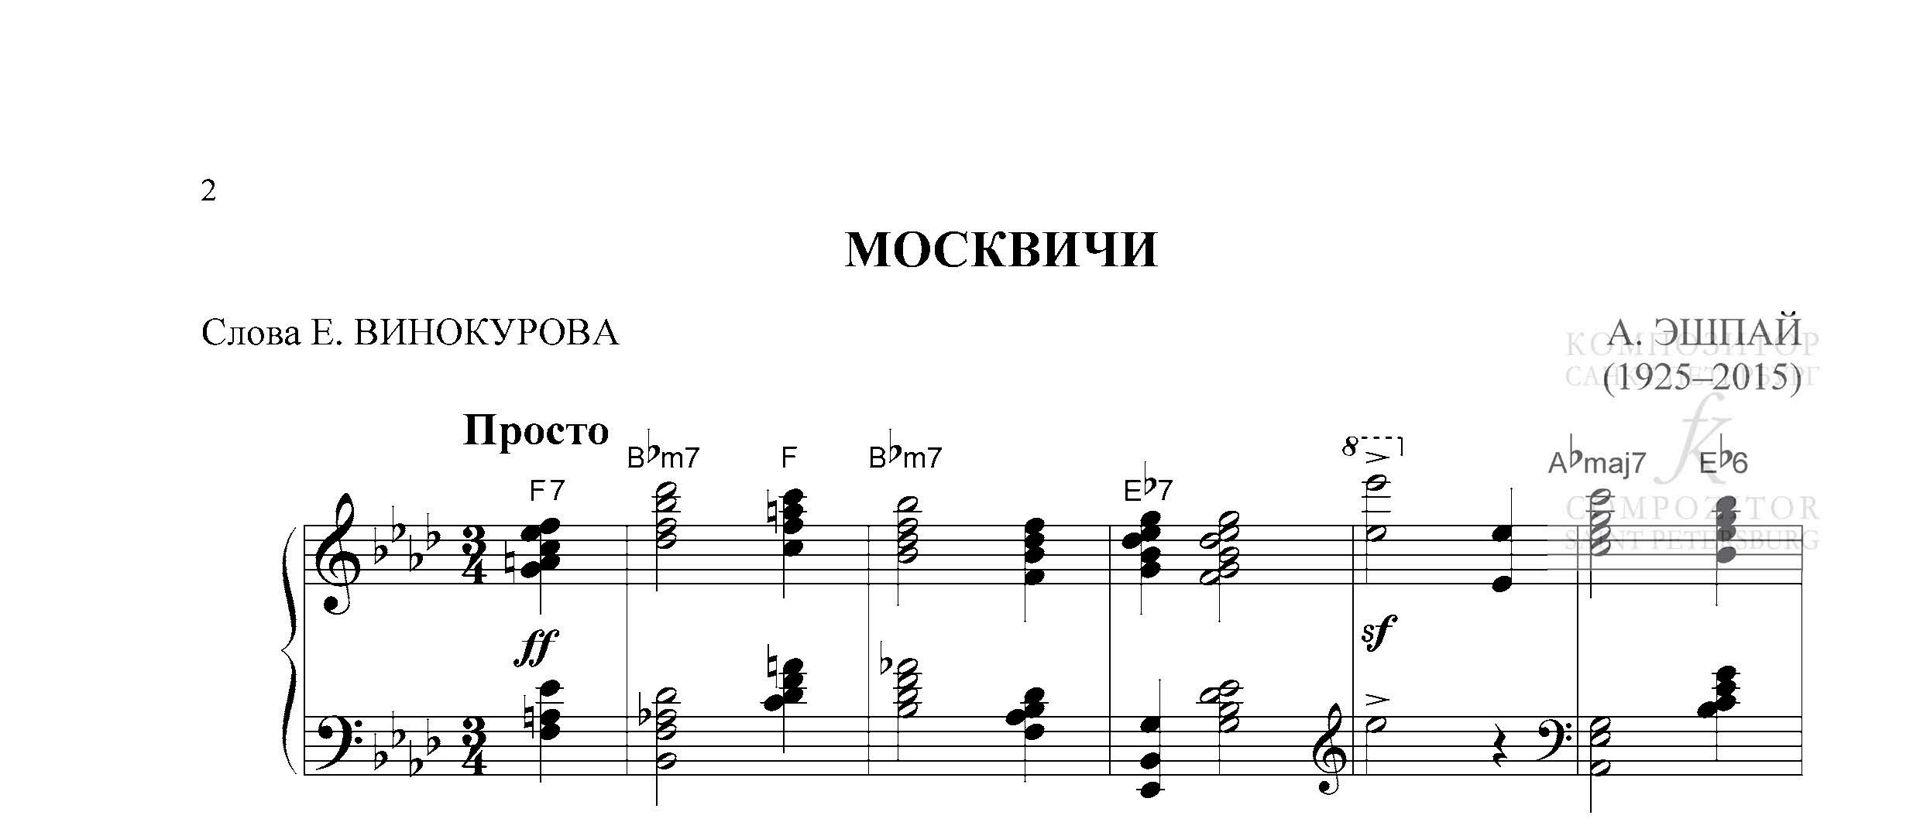 МОСКВИЧИ. Андрей Эшпай. Легкое переложение для фортепиано (гитары).